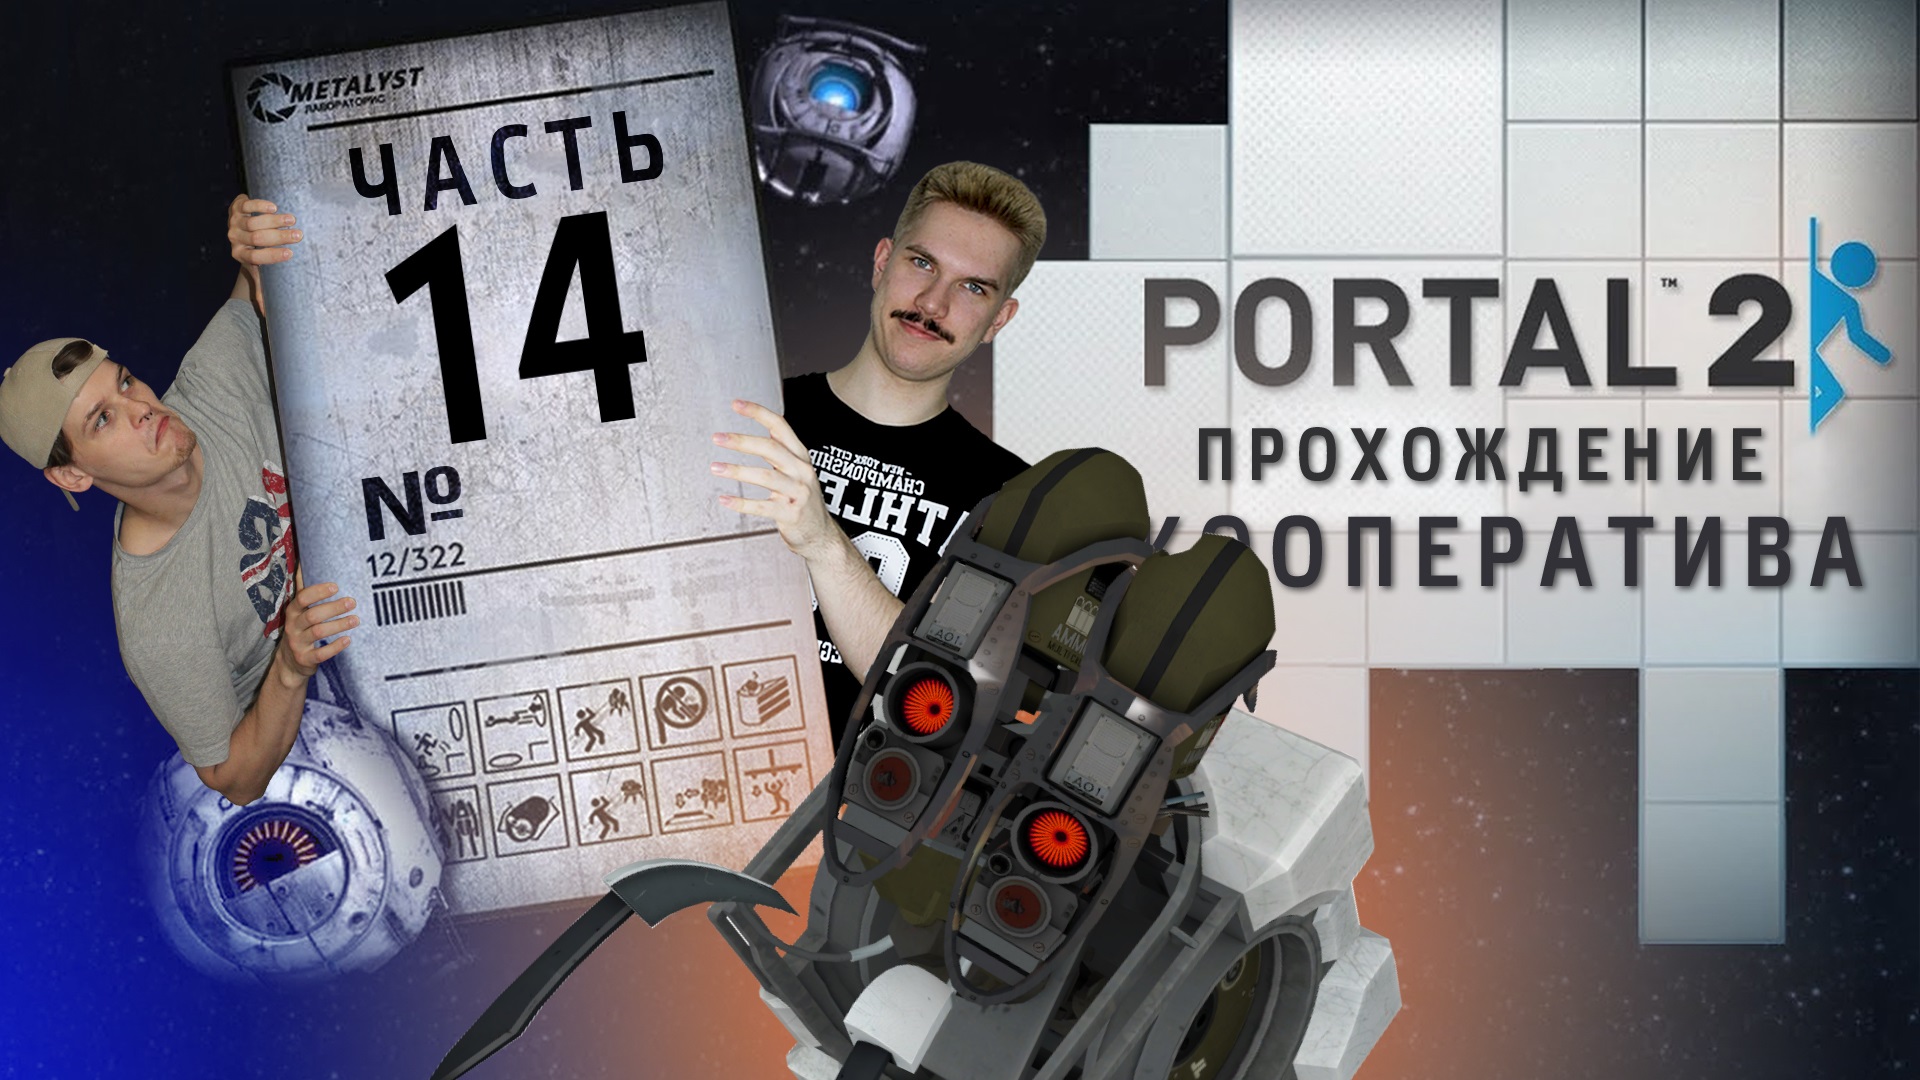 Portal 2 кооператив как пройти фото 38